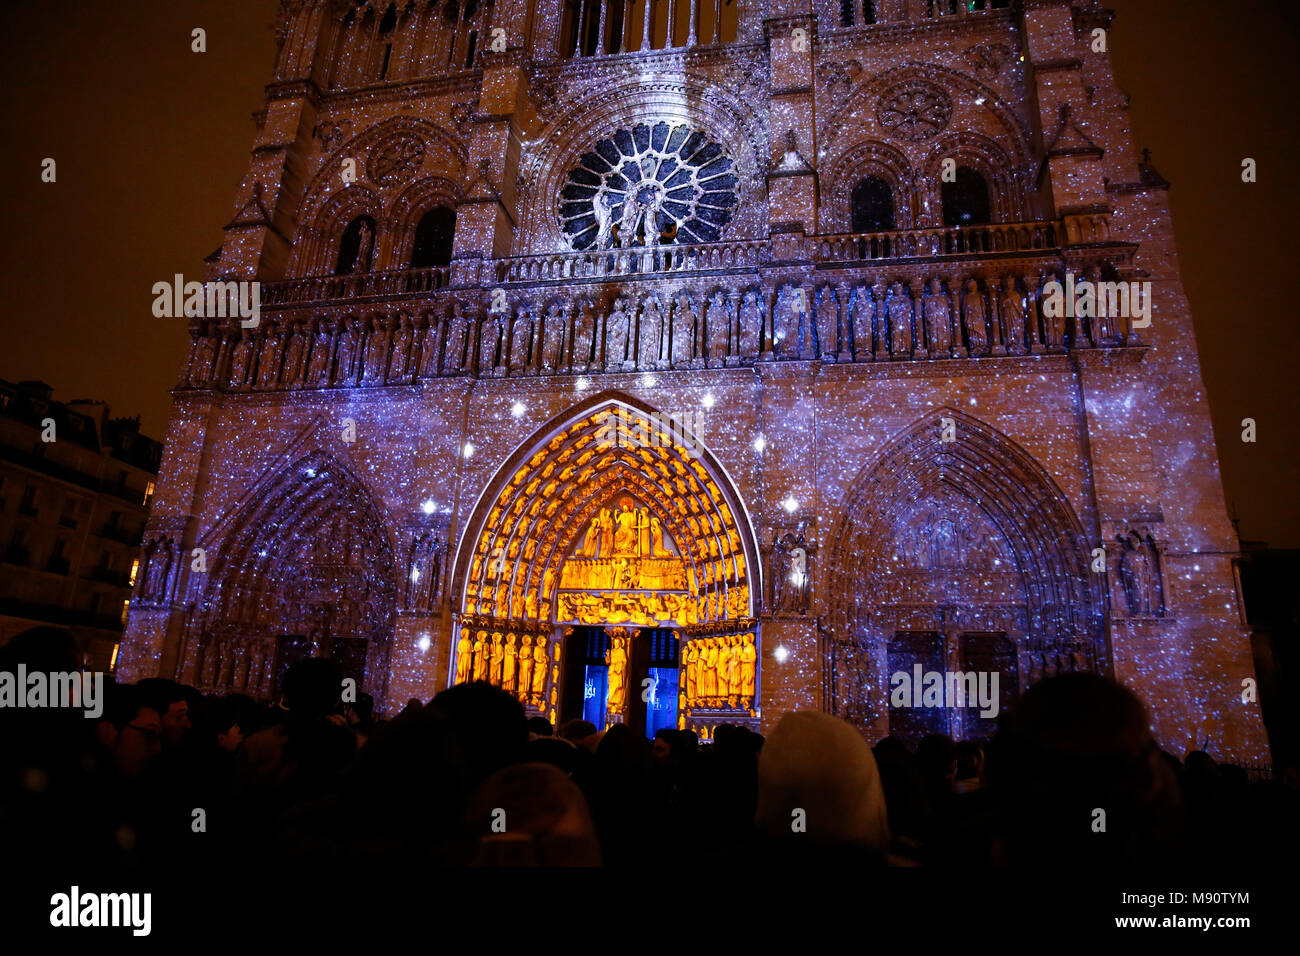 Spectacle son et lumière à la cathédrale Notre Dame de Paris, France. Banque D'Images